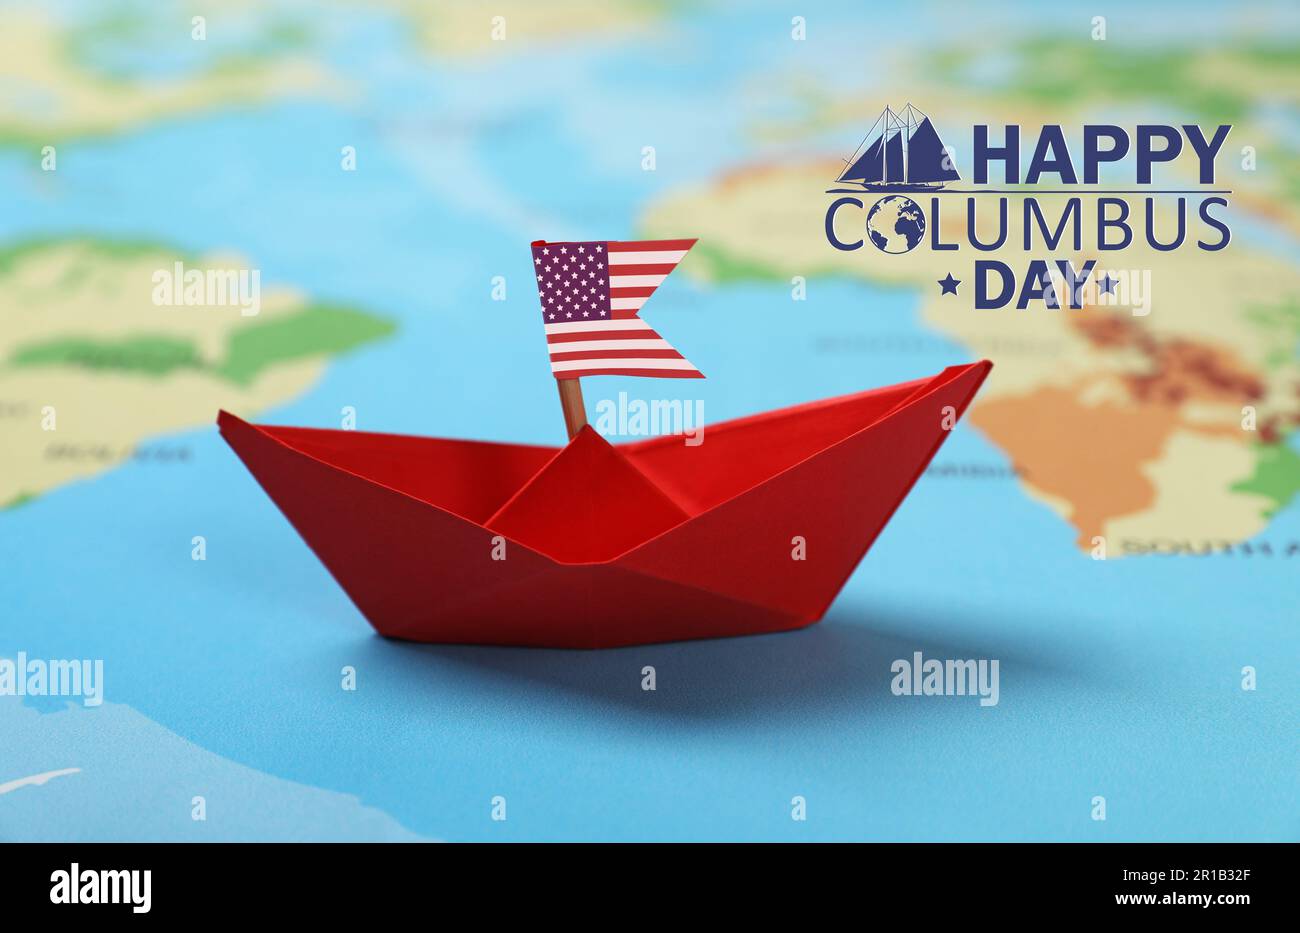 Buon giorno di Columbus. Imbarcazione di carta rossa con bandiera americana sulla mappa del mondo Foto Stock